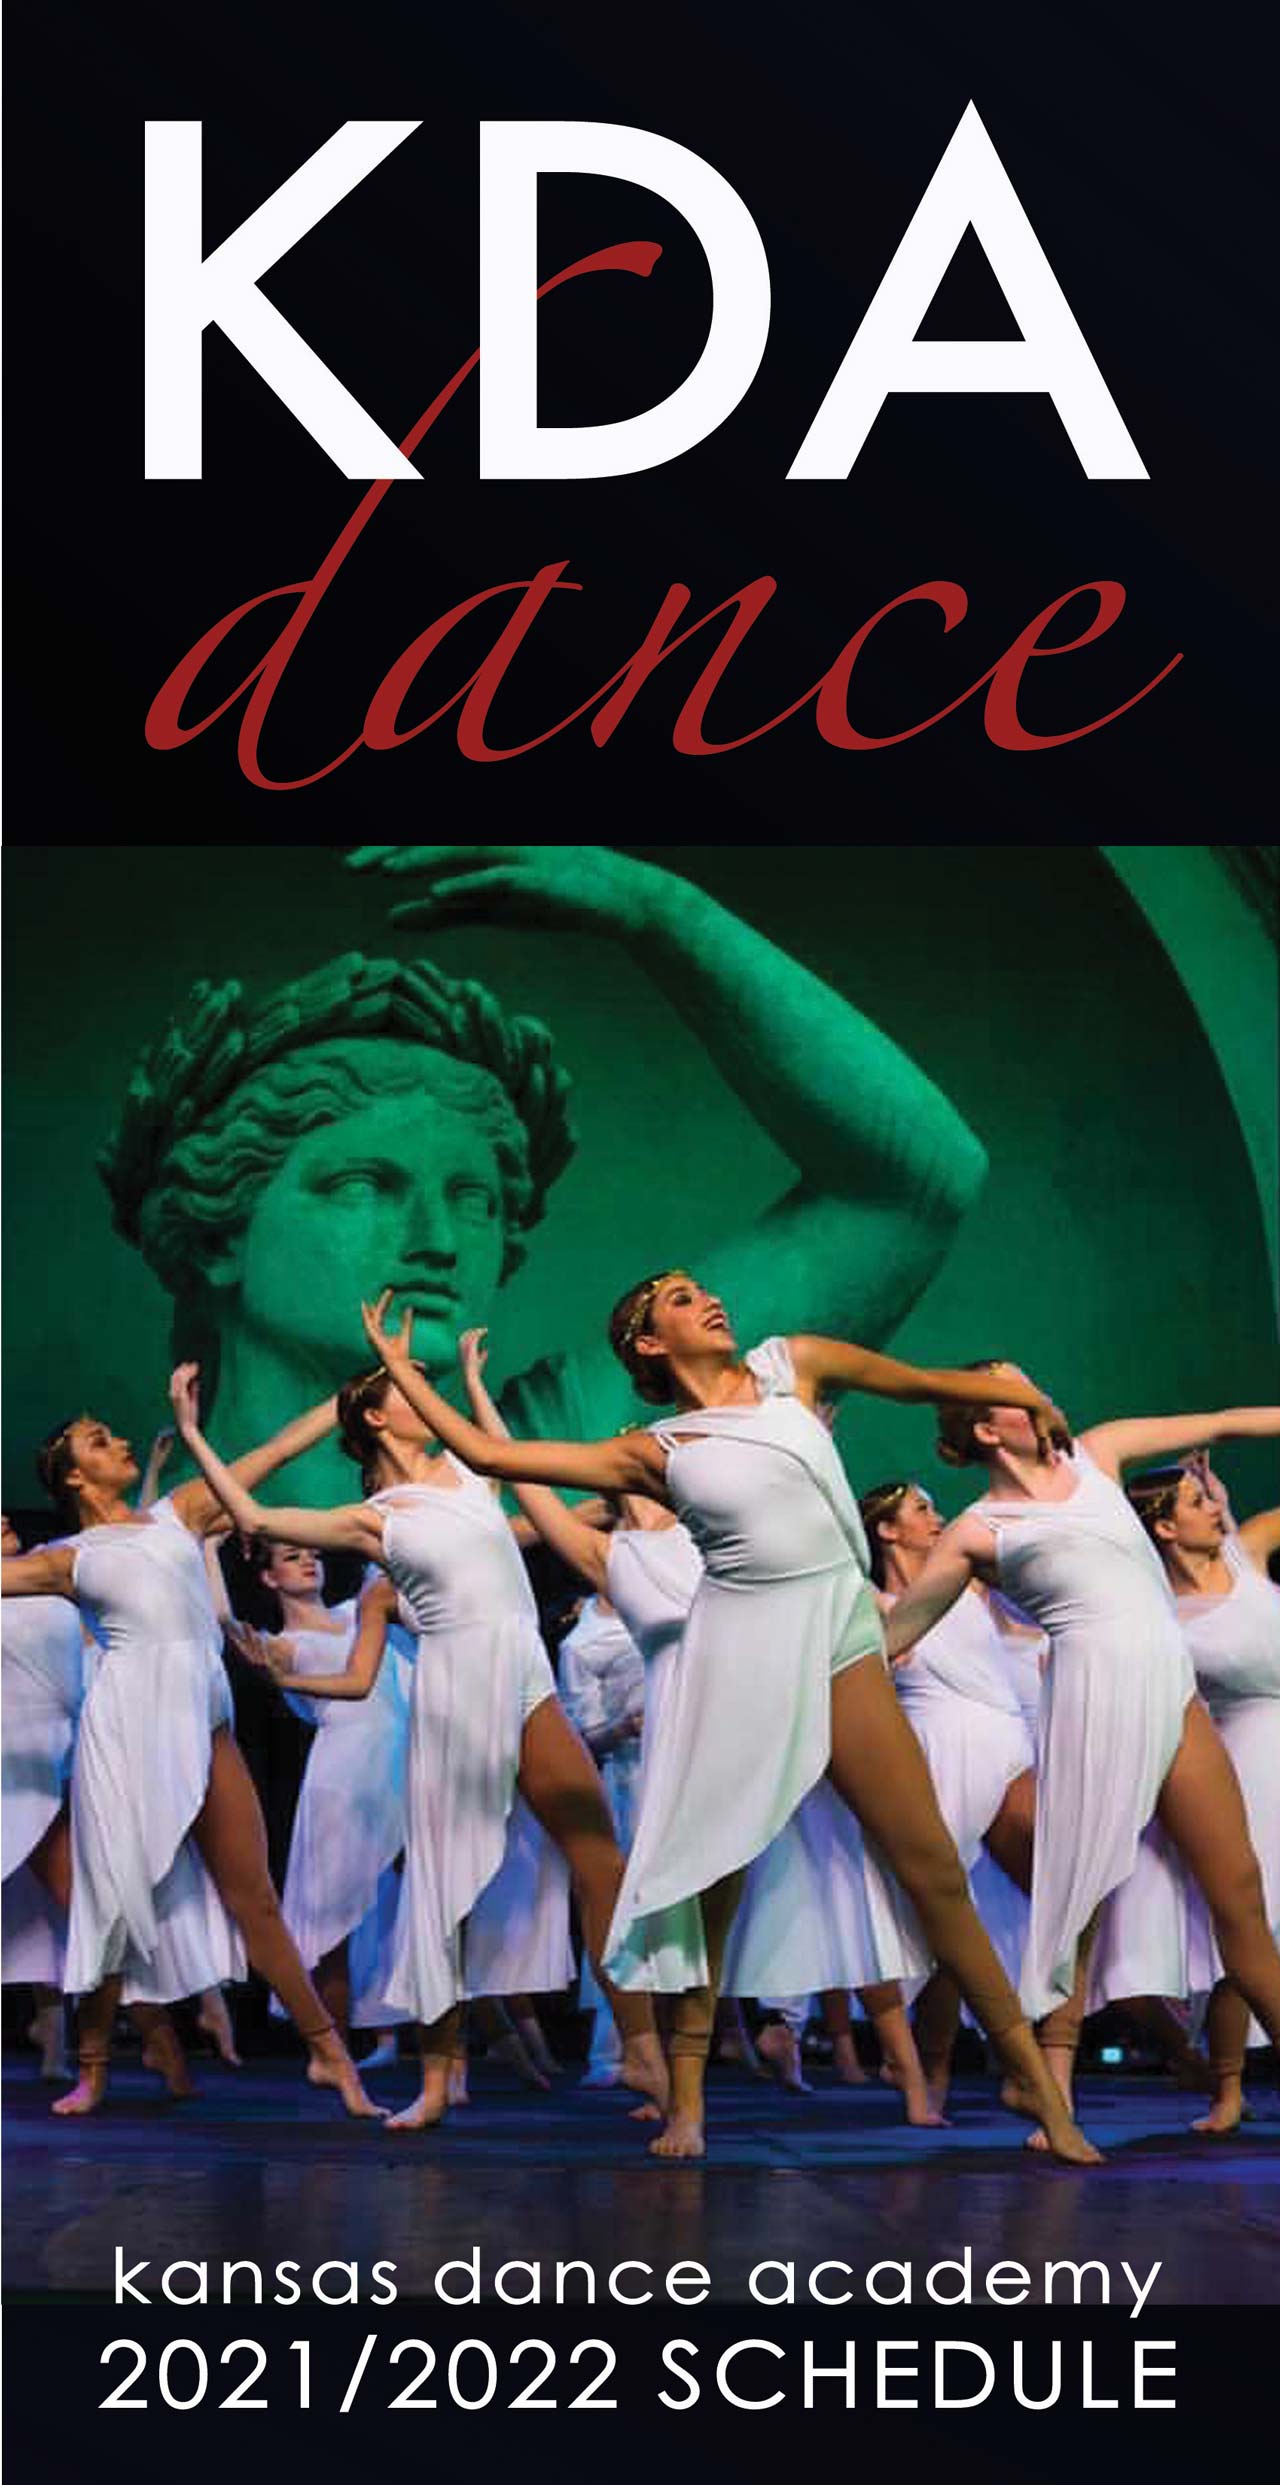 Kansas Dance Academy